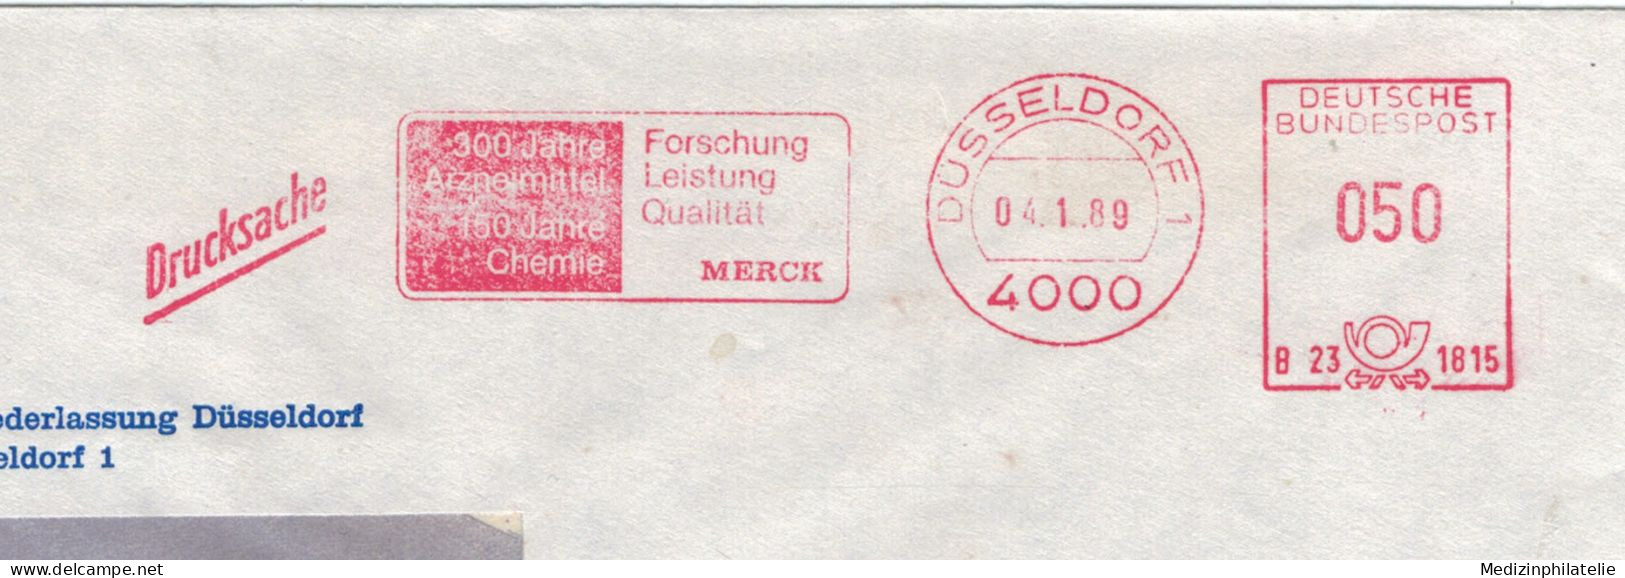 4000 Düsseldorf - Merck Forschung Leistung Qualität - Arzneimittel Chemie 1989 - Pharmazie